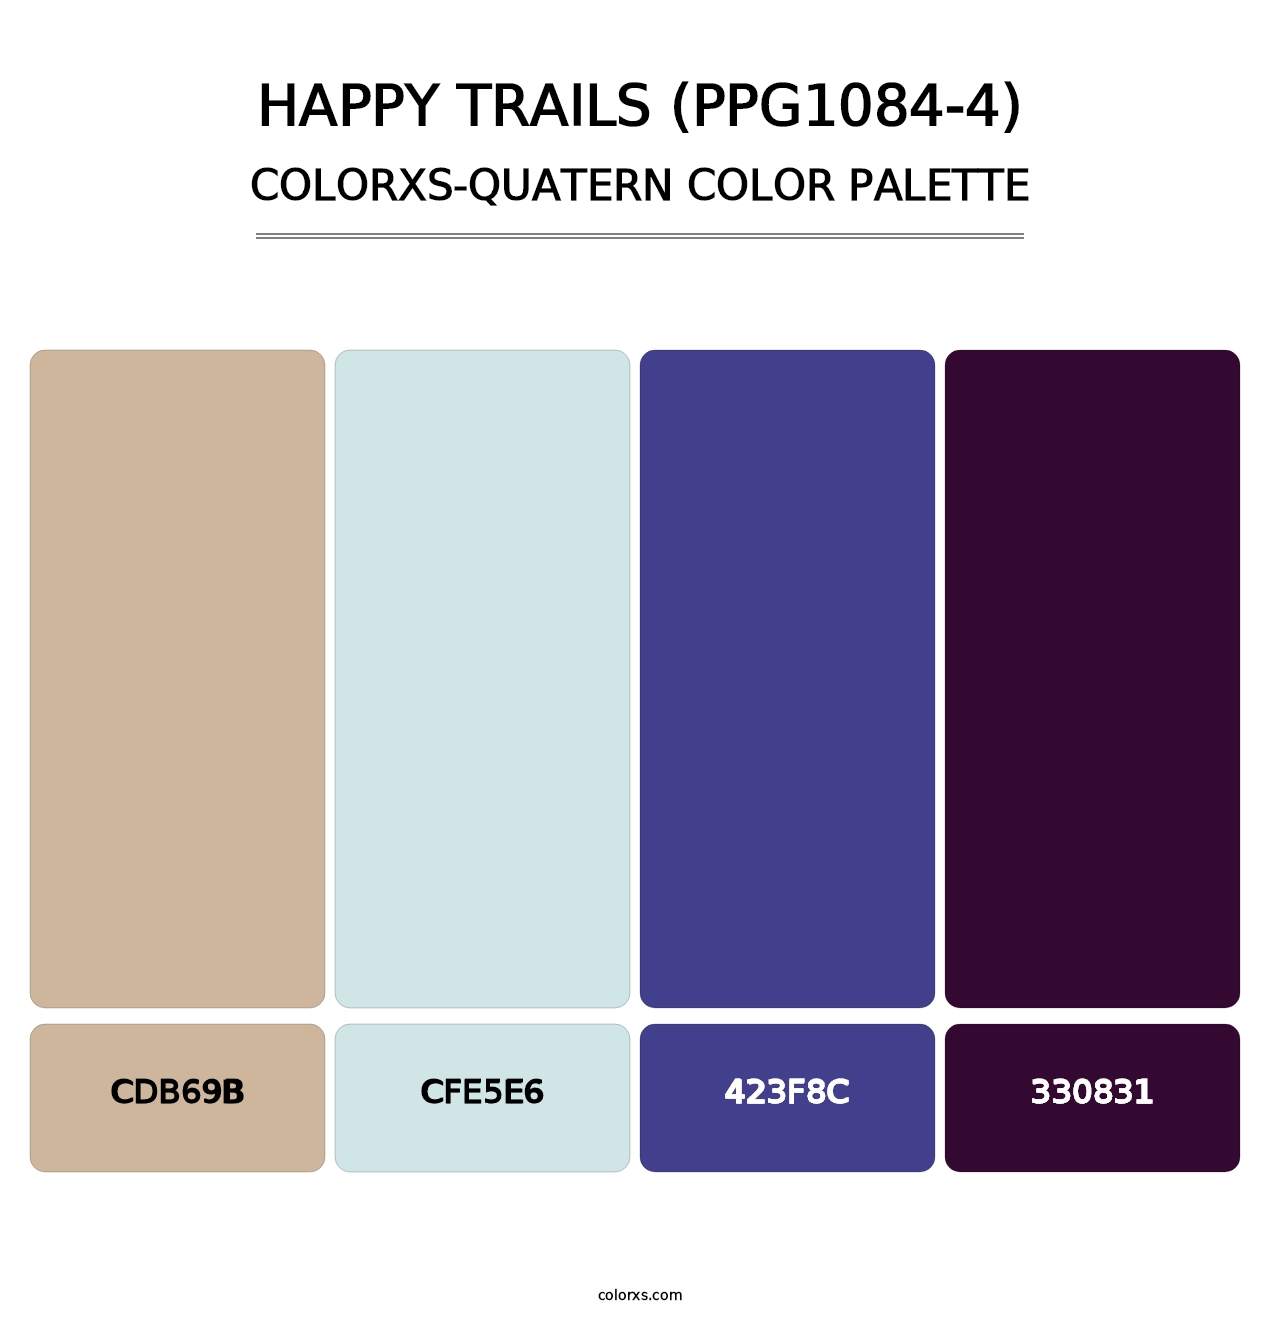 Happy Trails (PPG1084-4) - Colorxs Quatern Palette